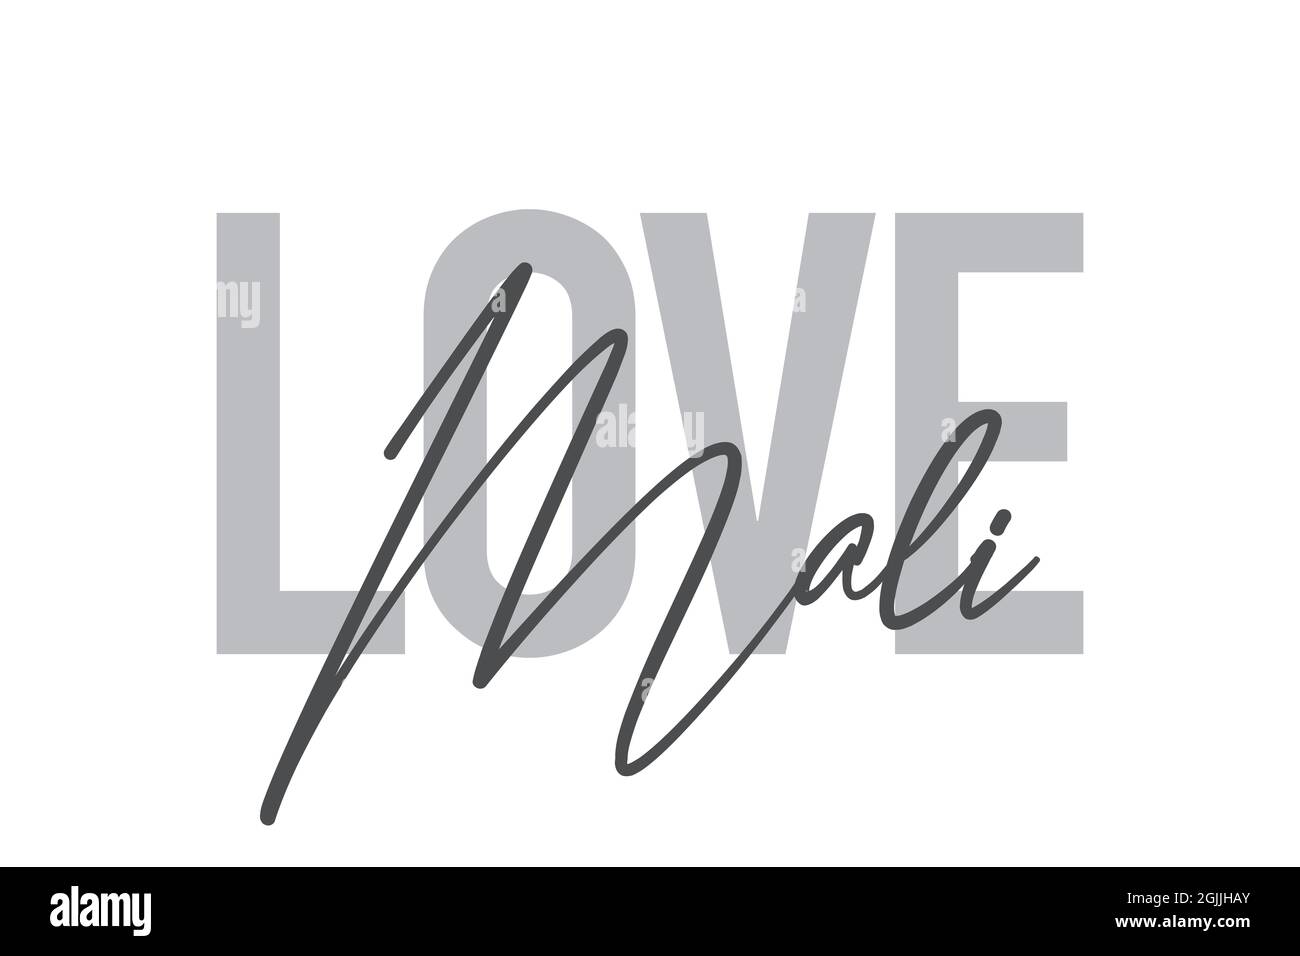 Modernes, schlichtes, minimalistisches typografisches Design eines Sprichwort „Love Mali“ in Grautönen. Coole, urbane, trendige und verspielte Grafik-Vektorgrafik mit han Stockfoto